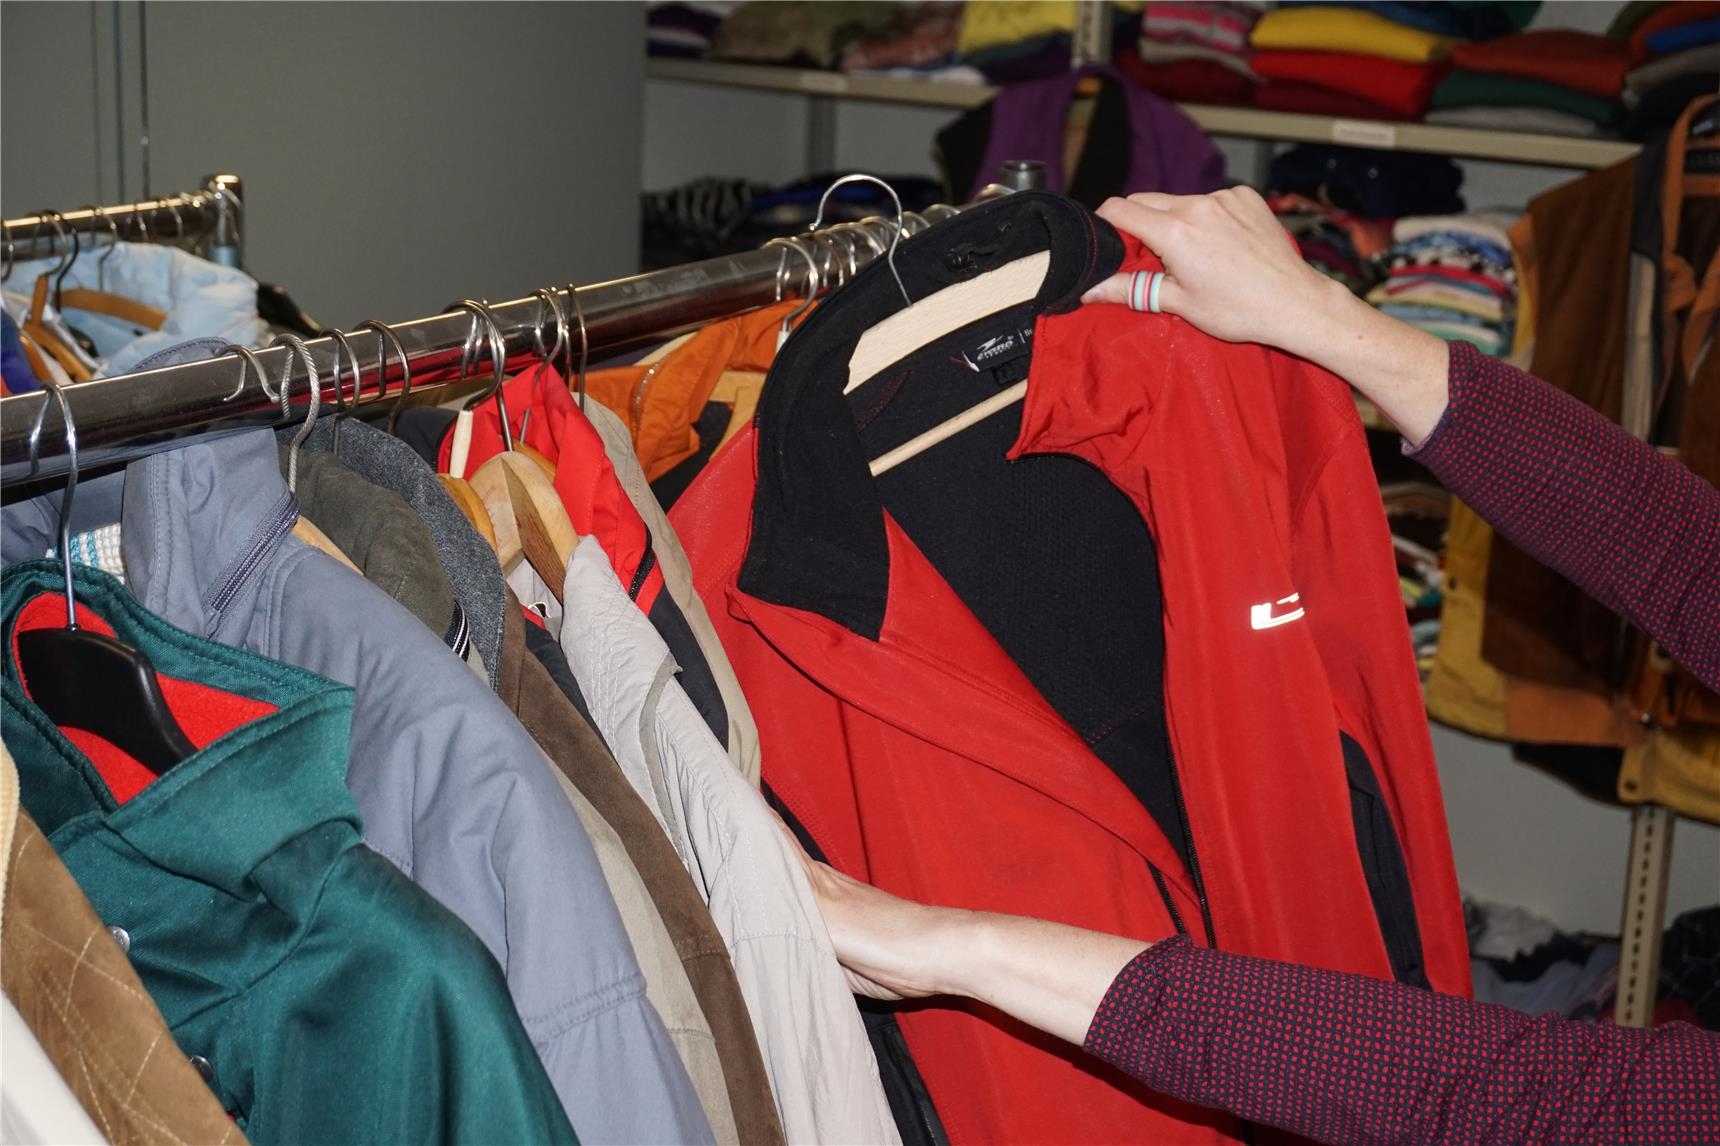 Zwei Hände halten eine Jacke, die auf einem Kleiderständer mit vielen Jacken in verschiedenen Farben hängt (Jutta Link)